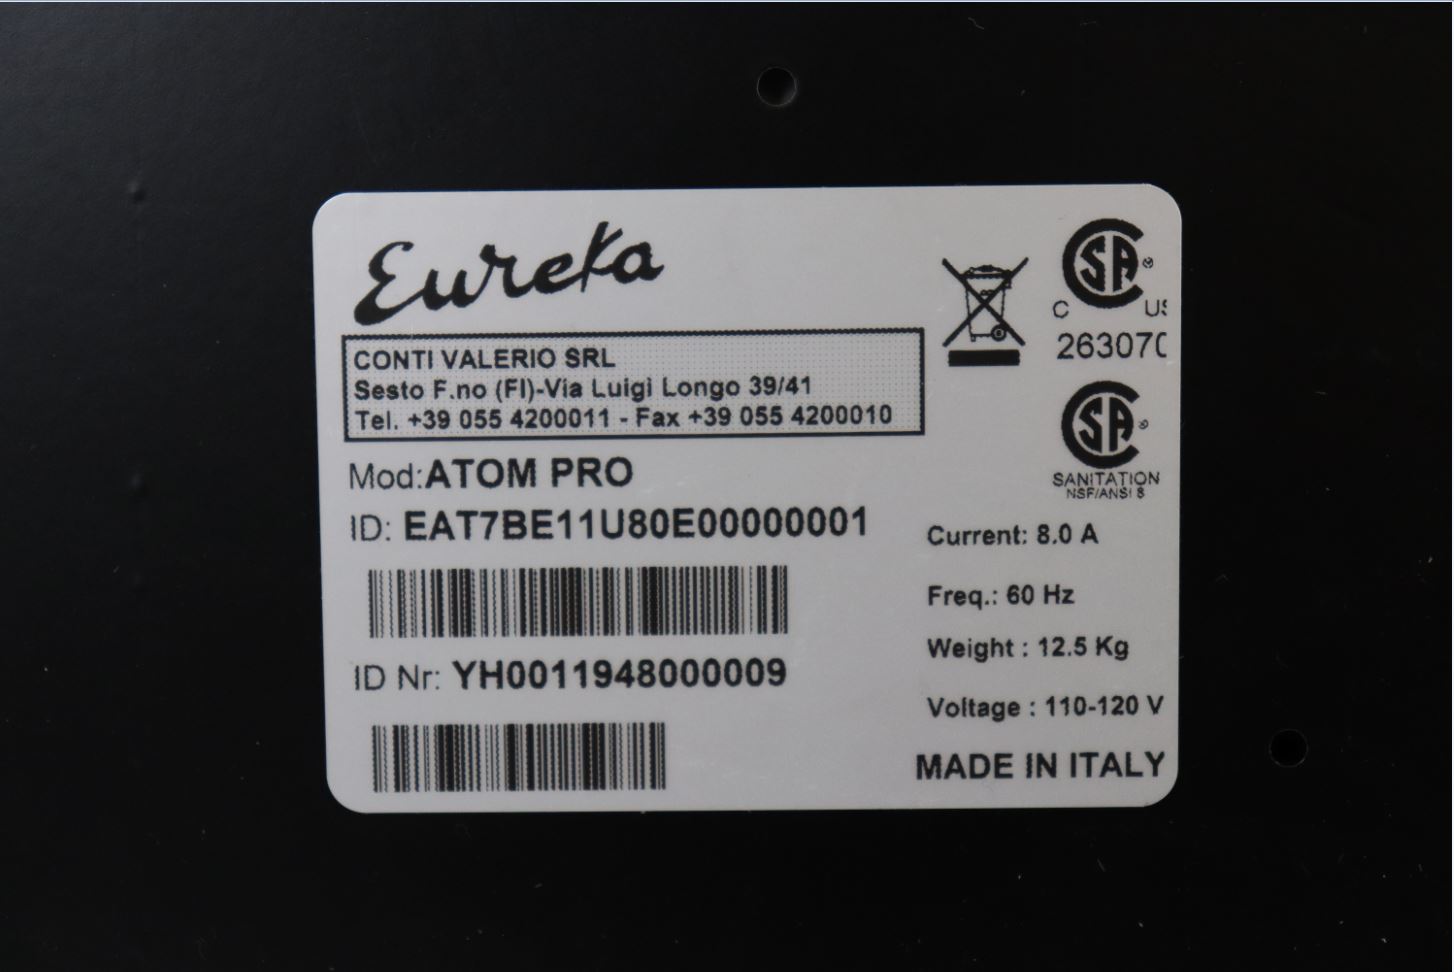 Thumbnail - Eureka Atom Pro Grinder